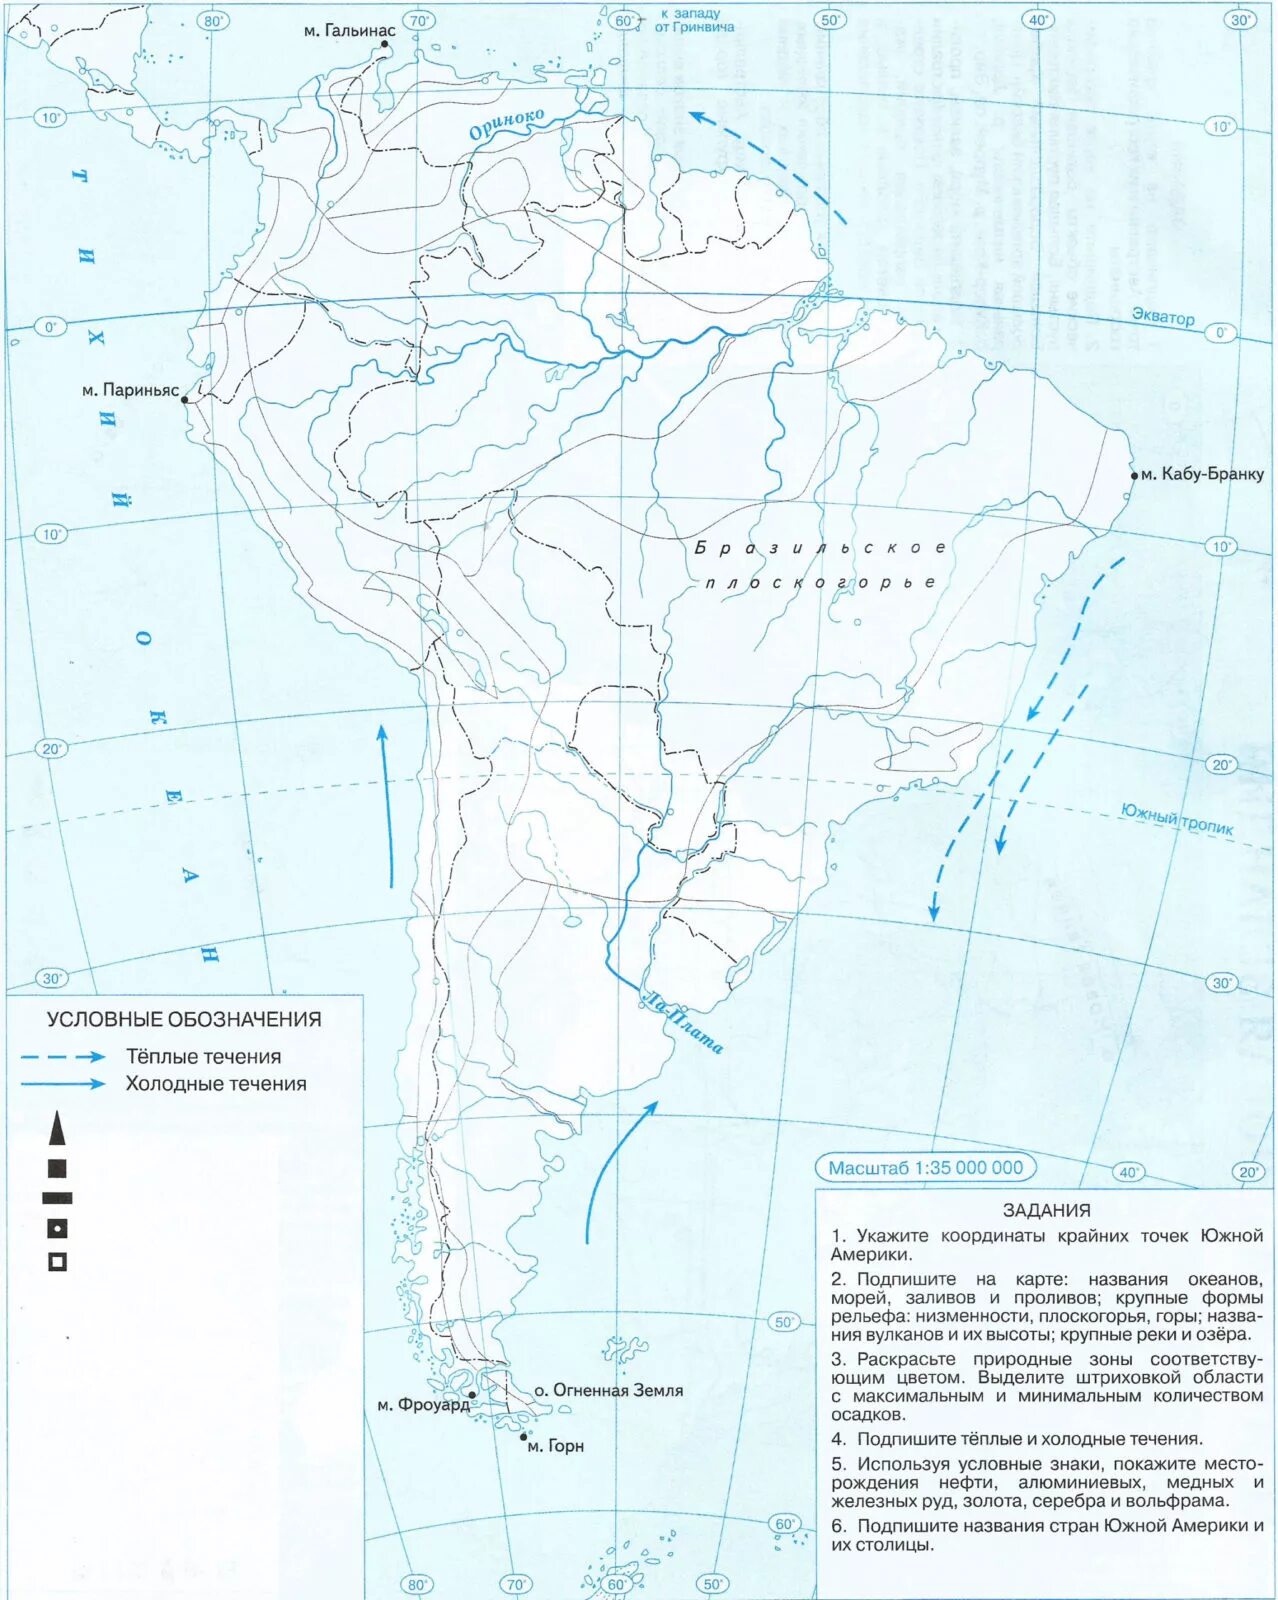 Физическая карта Южной Америки 7 класс контурная карта. Контурная карта по географии 7 класс Южная Америка. Контурная карта по географии 7 класс по Южной Америке. Контурная карта Южная Америка 11 класс. Подпишите на контурной карте южной америки названия